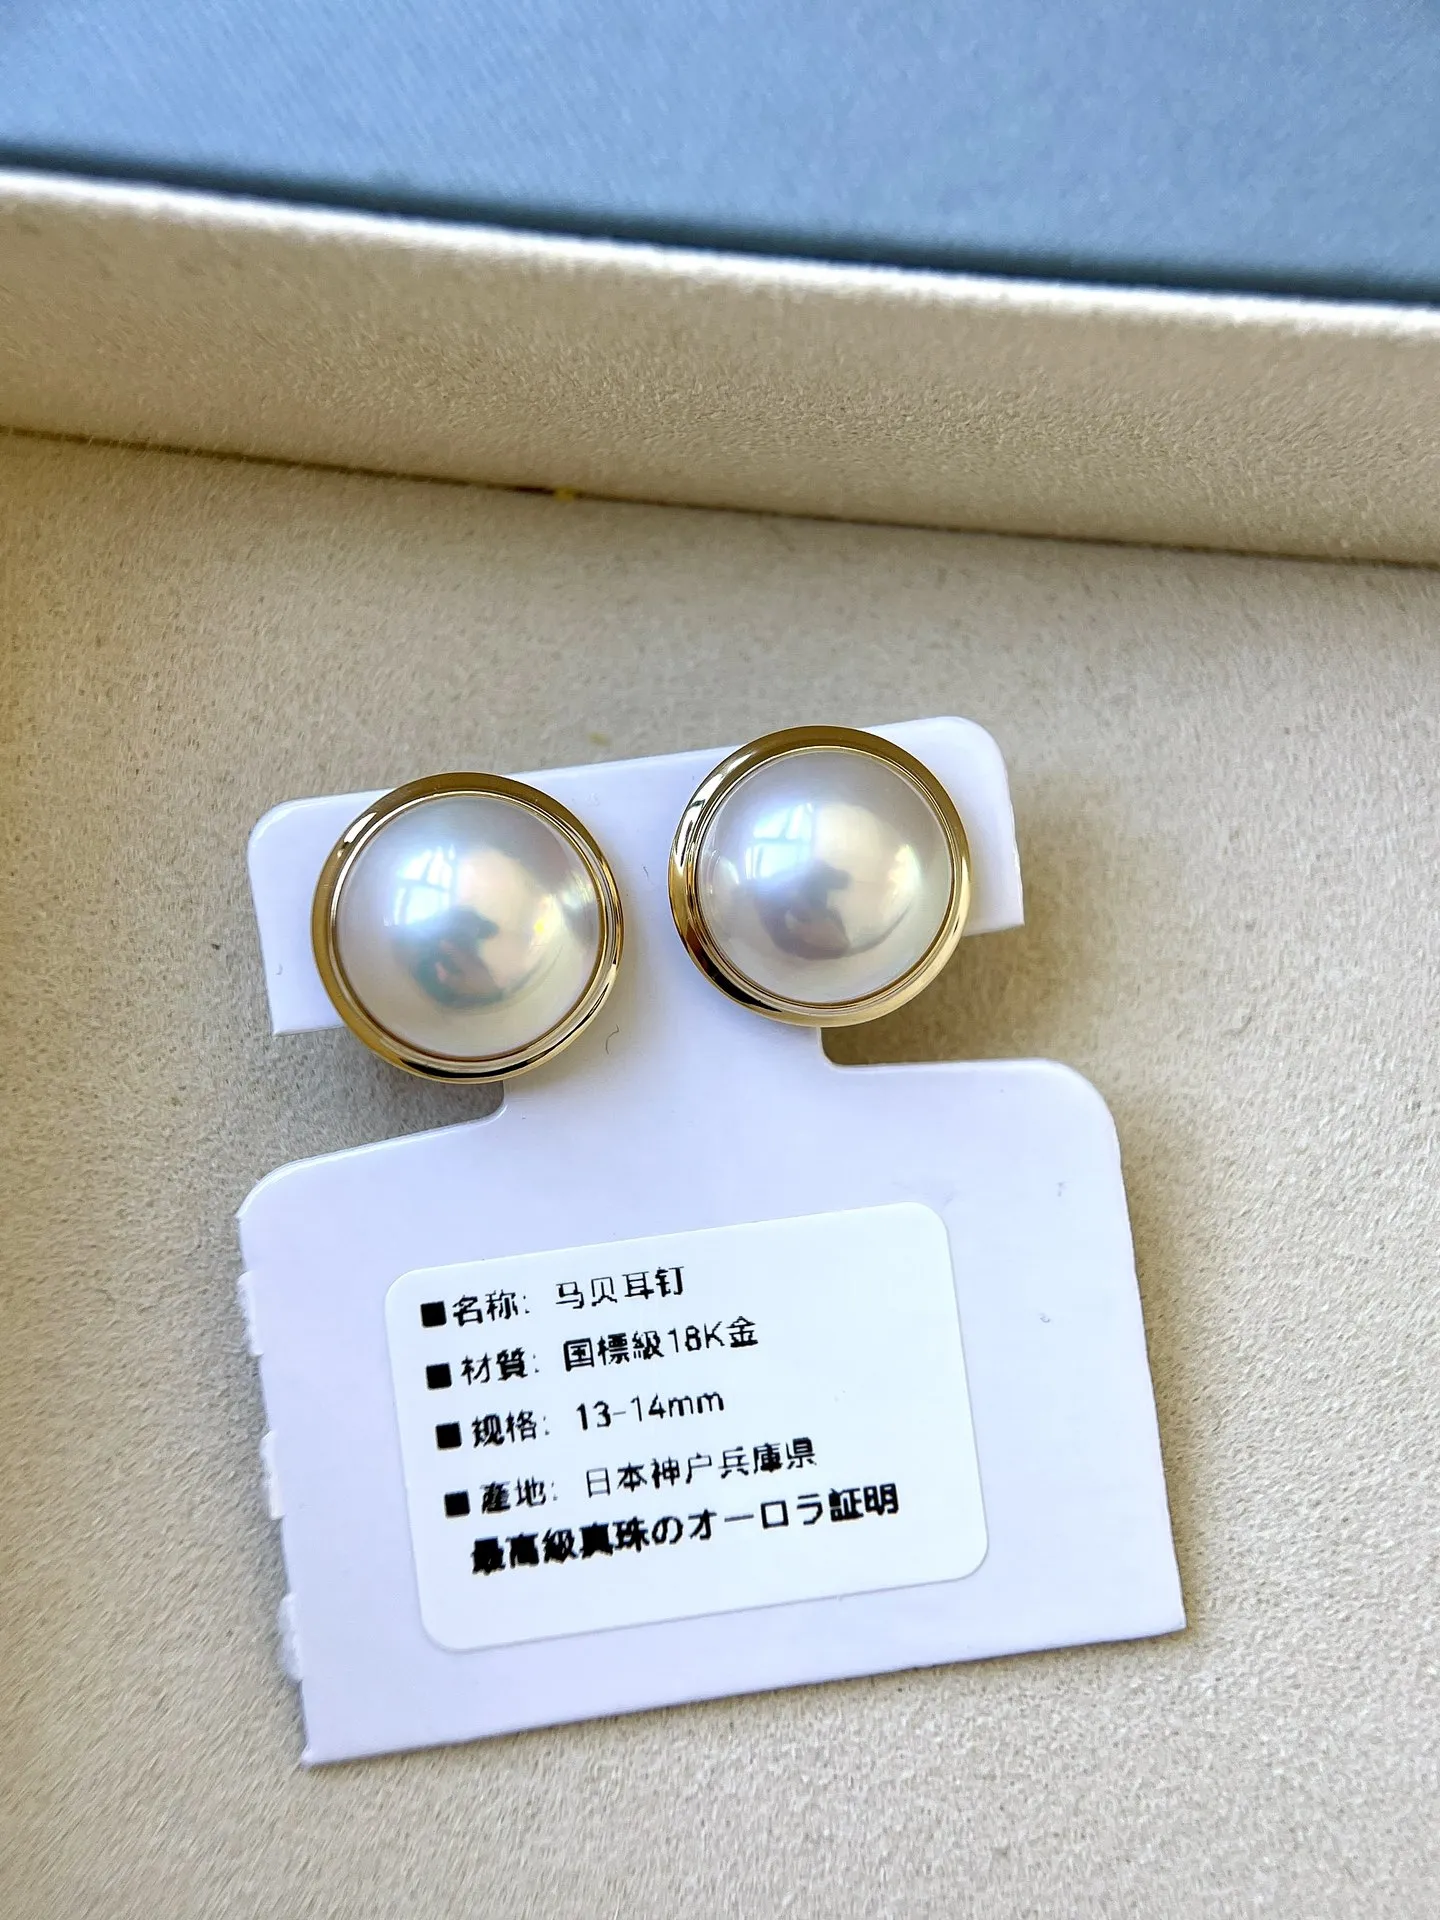 【白色马贝耳钉】白色马贝成品耳钉，18K金材质，颜色漂亮，光晕强，镜面光！裸珠规格：13-14mm，